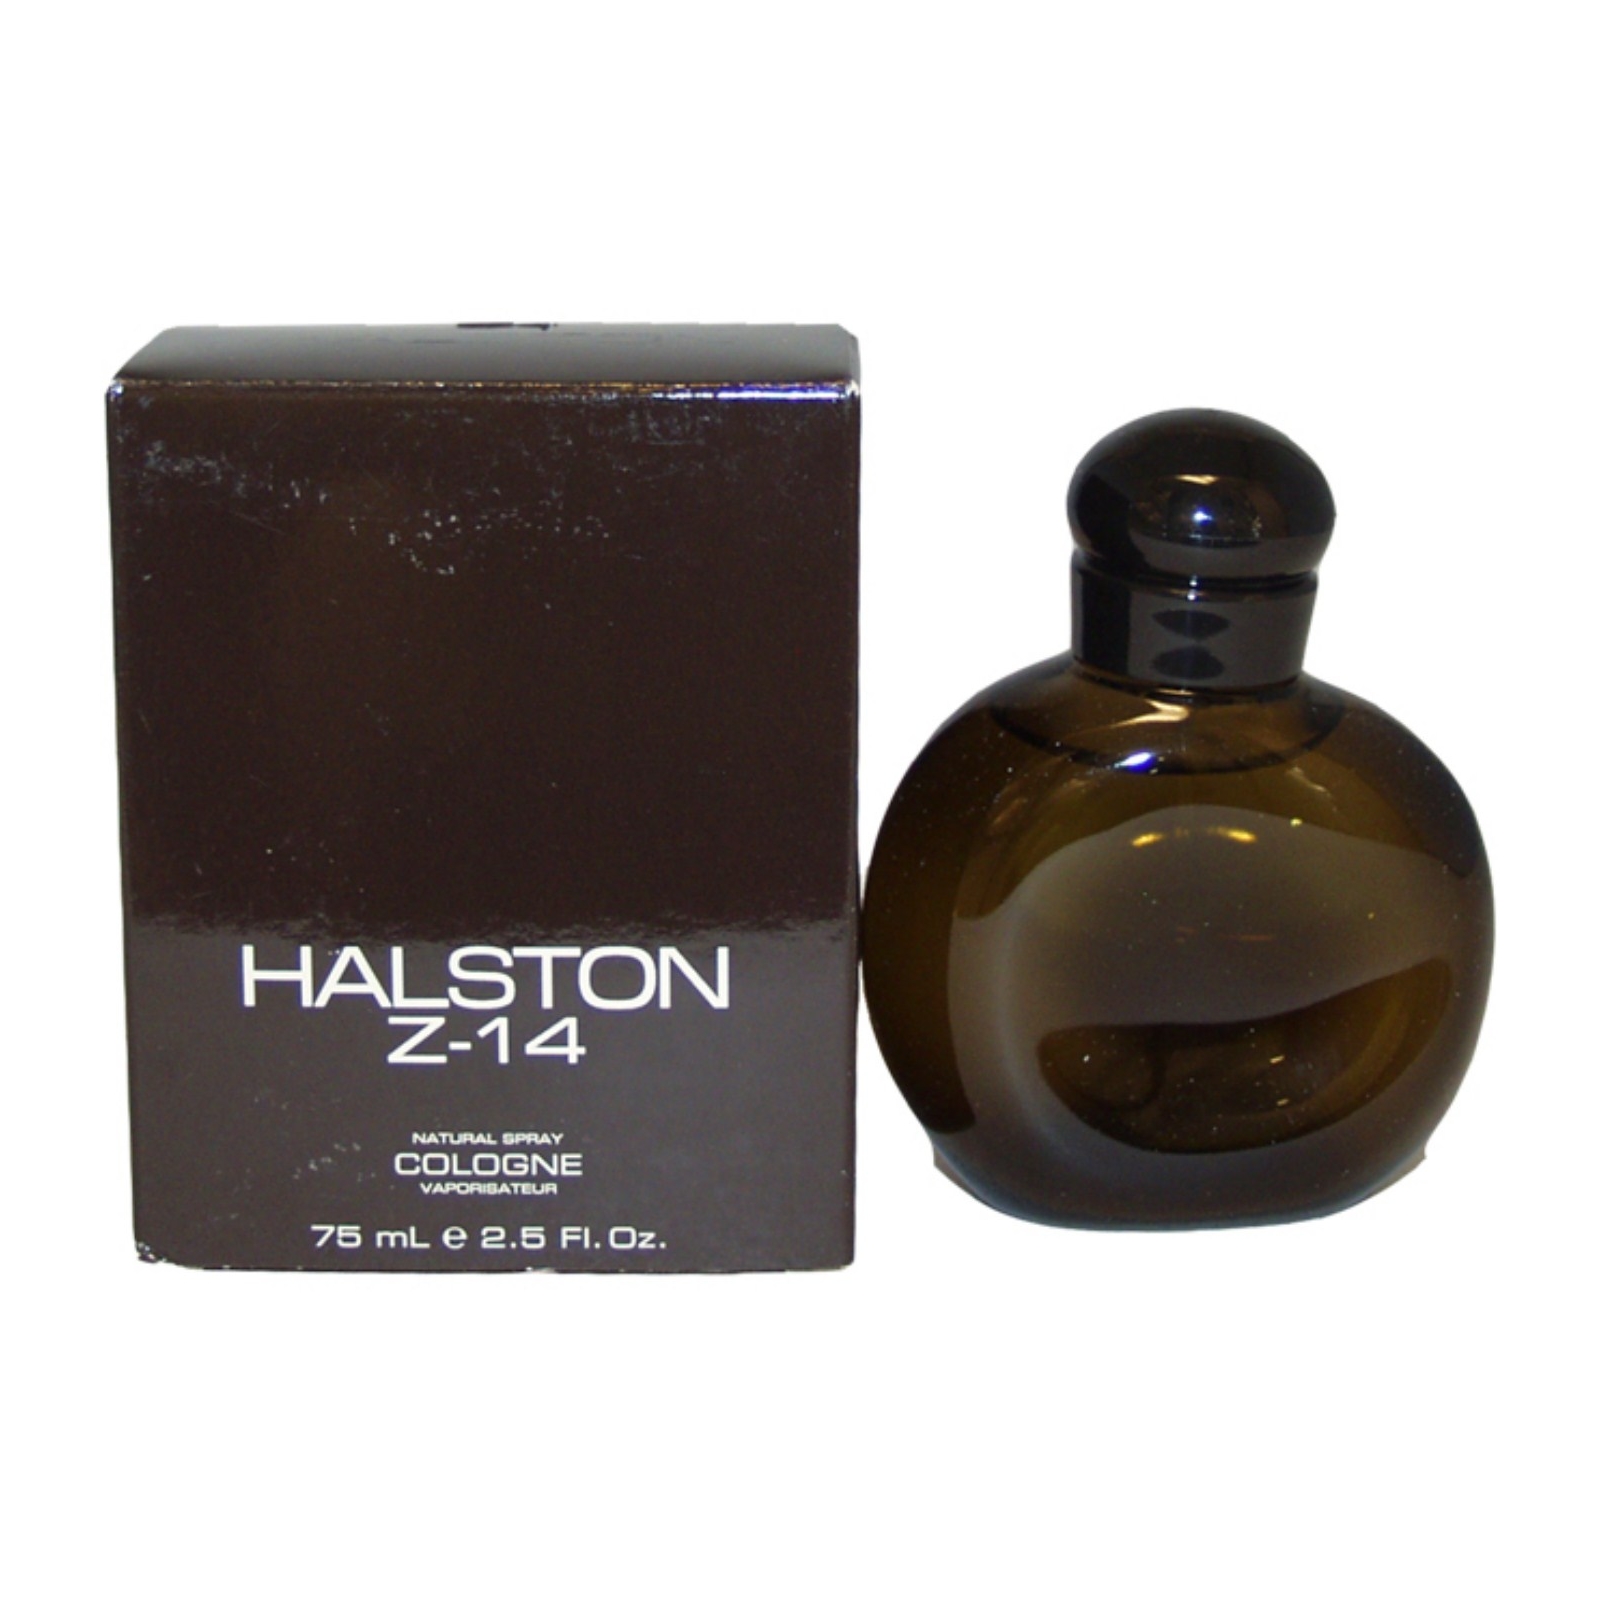 Halston Z-14 by  for Men - 2.5 oz Cologne Spray